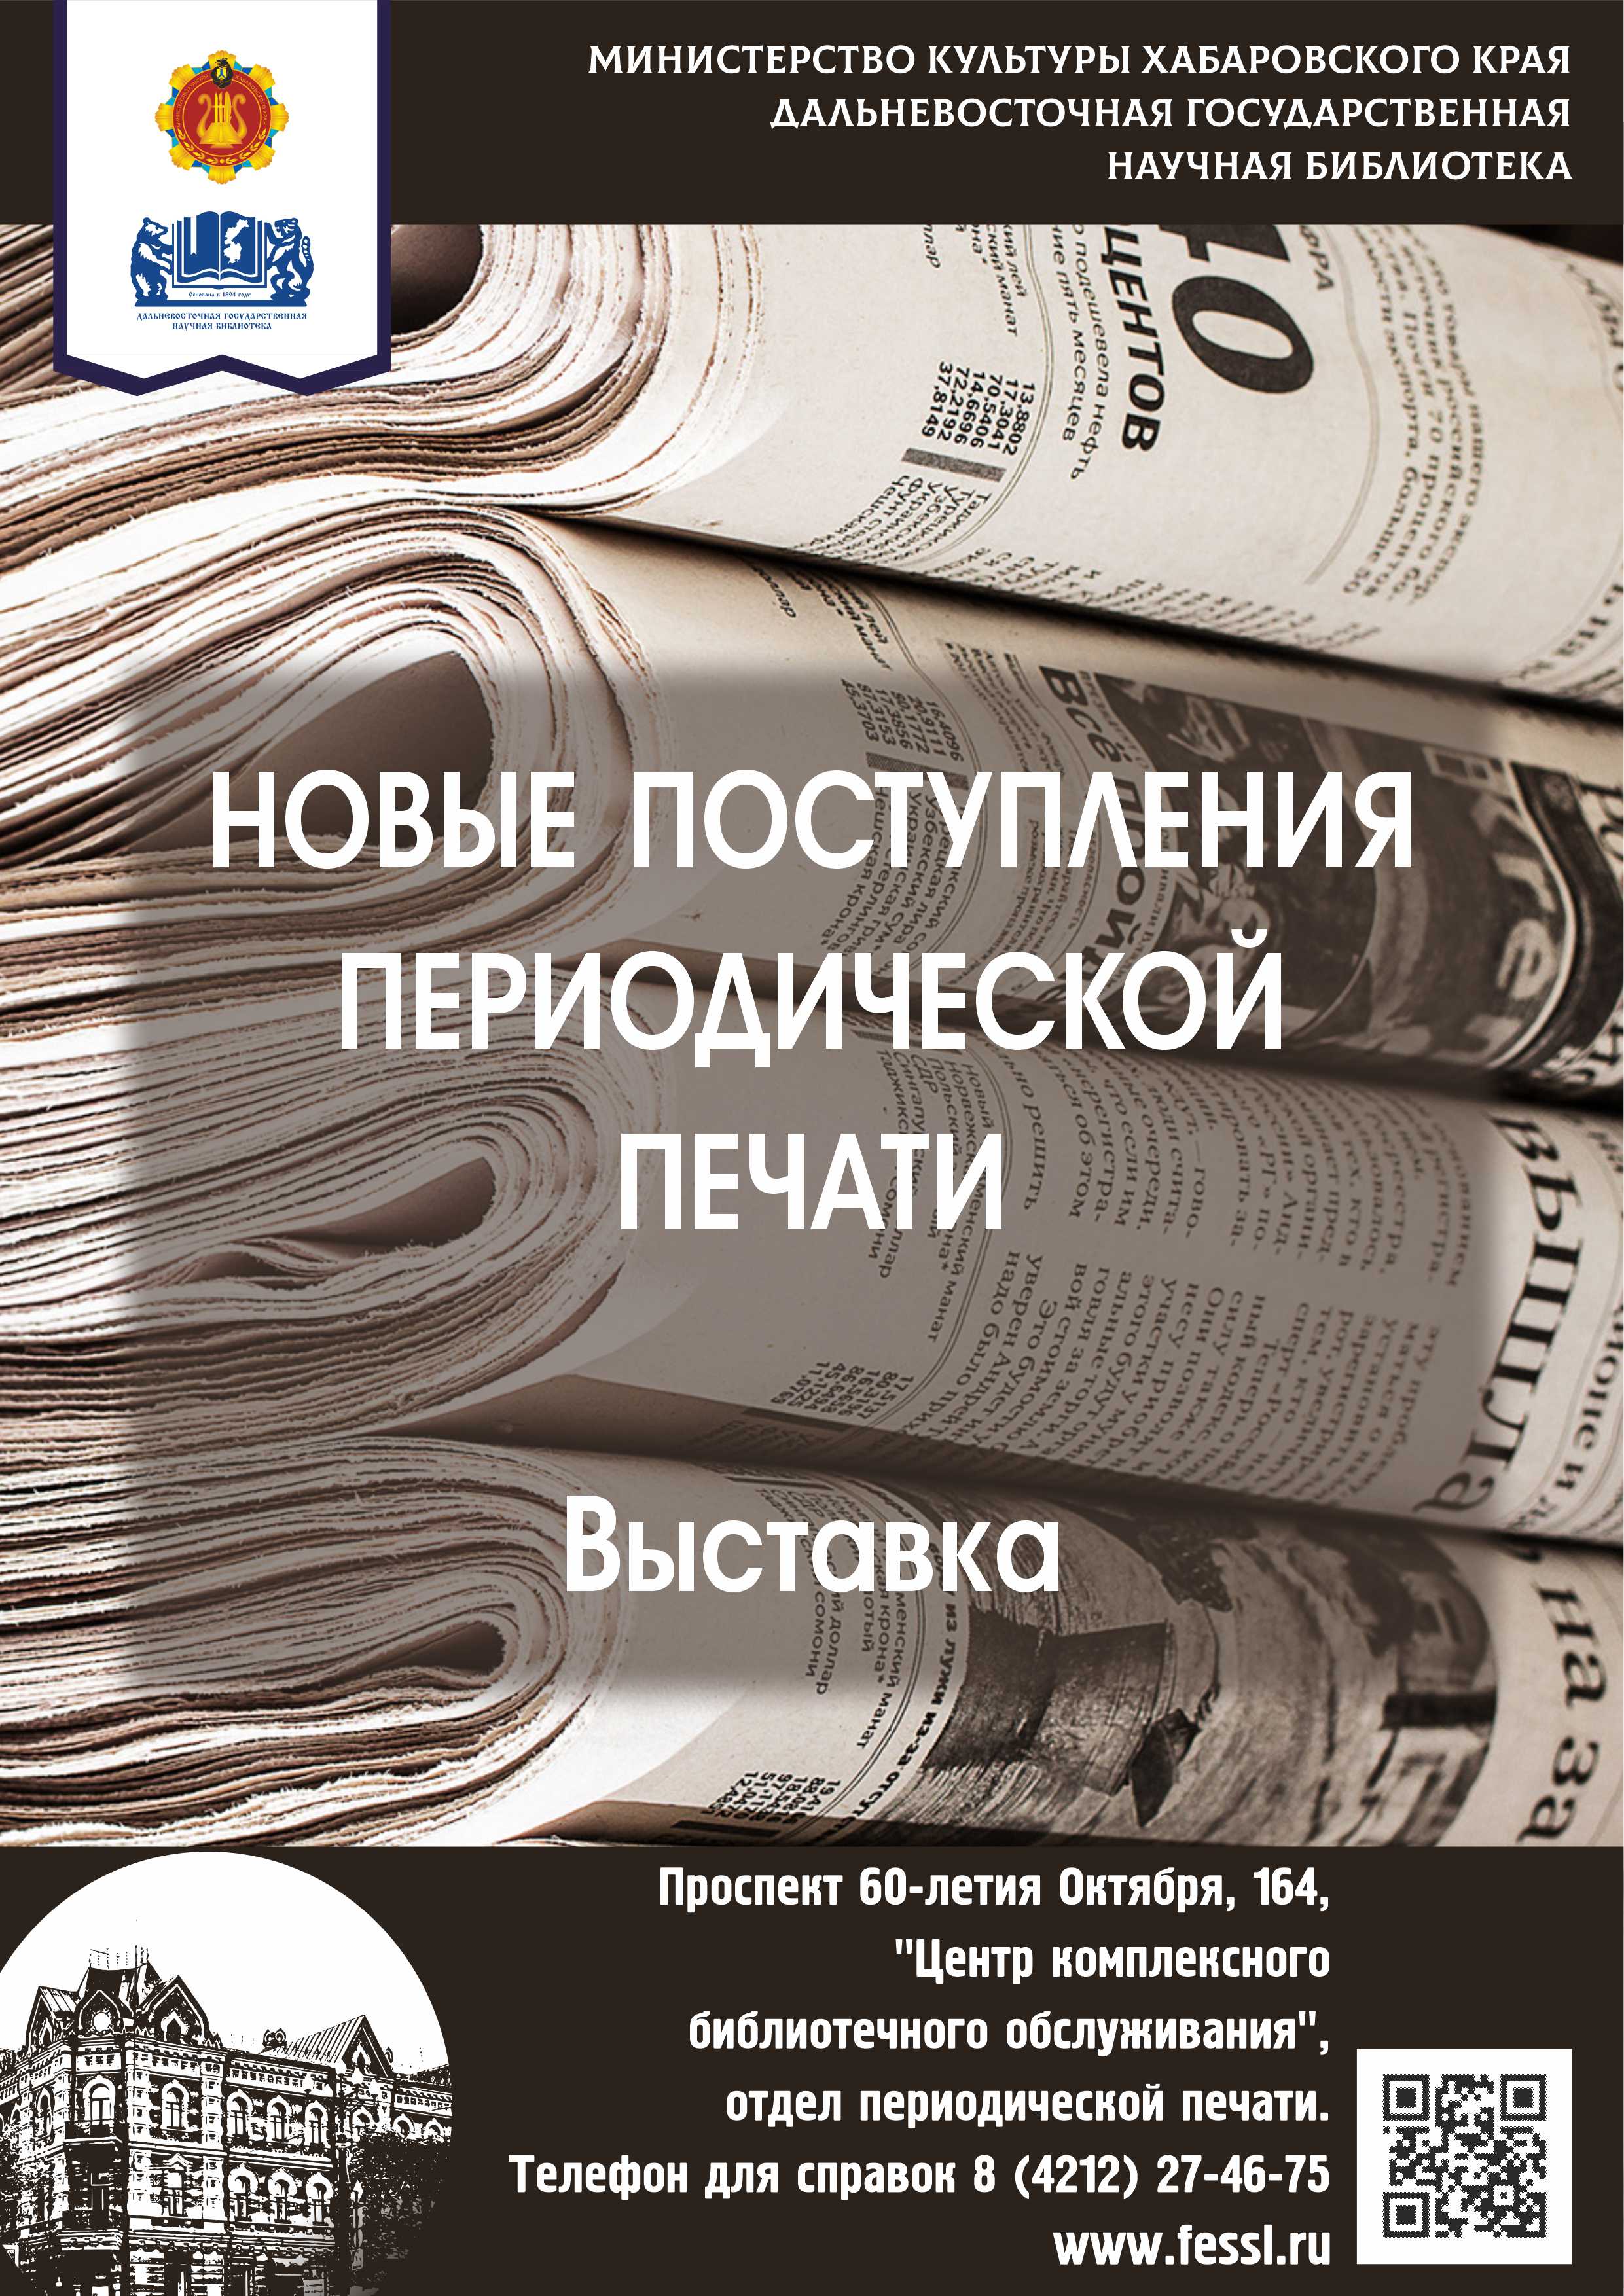 Новые поступления журналов в фонд периодической печати. Ноябрь 